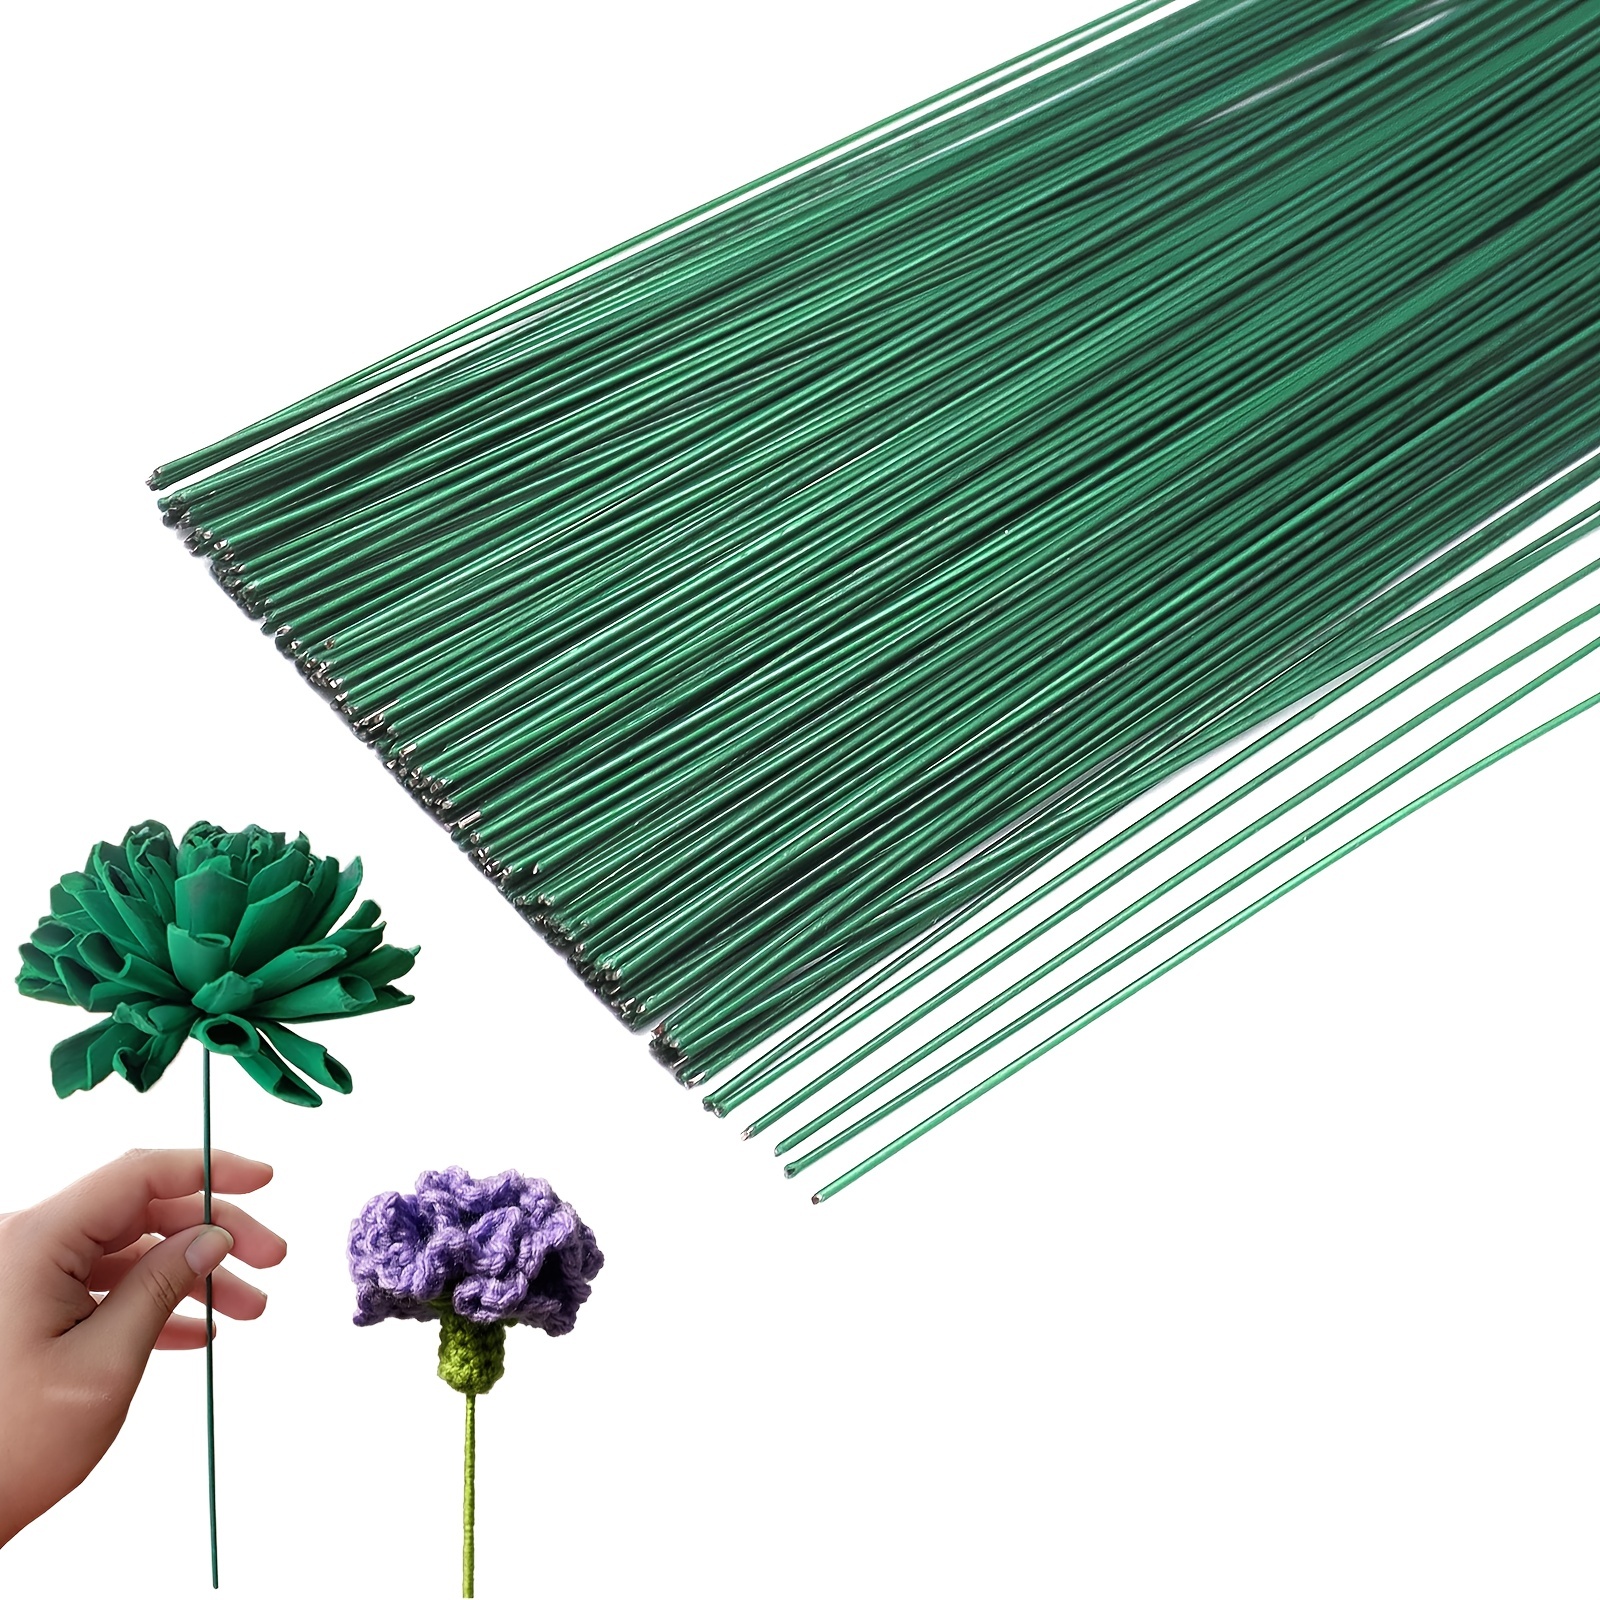 100pcs flower wire stems Flower Arrangement Florist Wire Stems Artificial